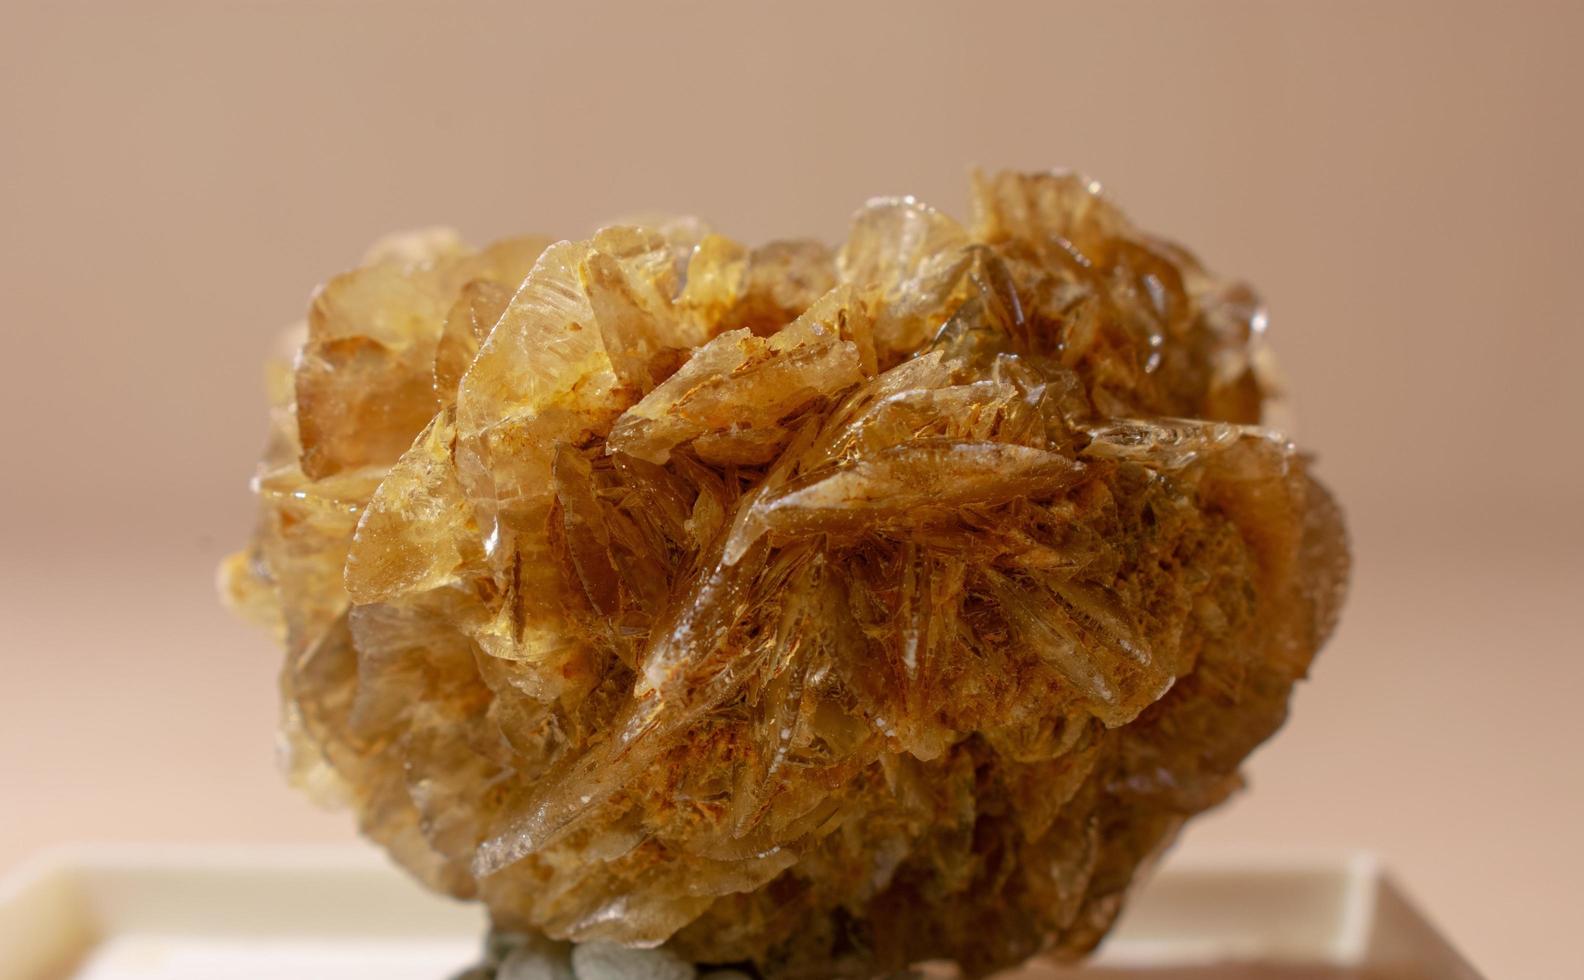 gipsmalmprov, närbild av ett råmaterial, mineraldetalj för samlingism eller vetenskaplig analys foto